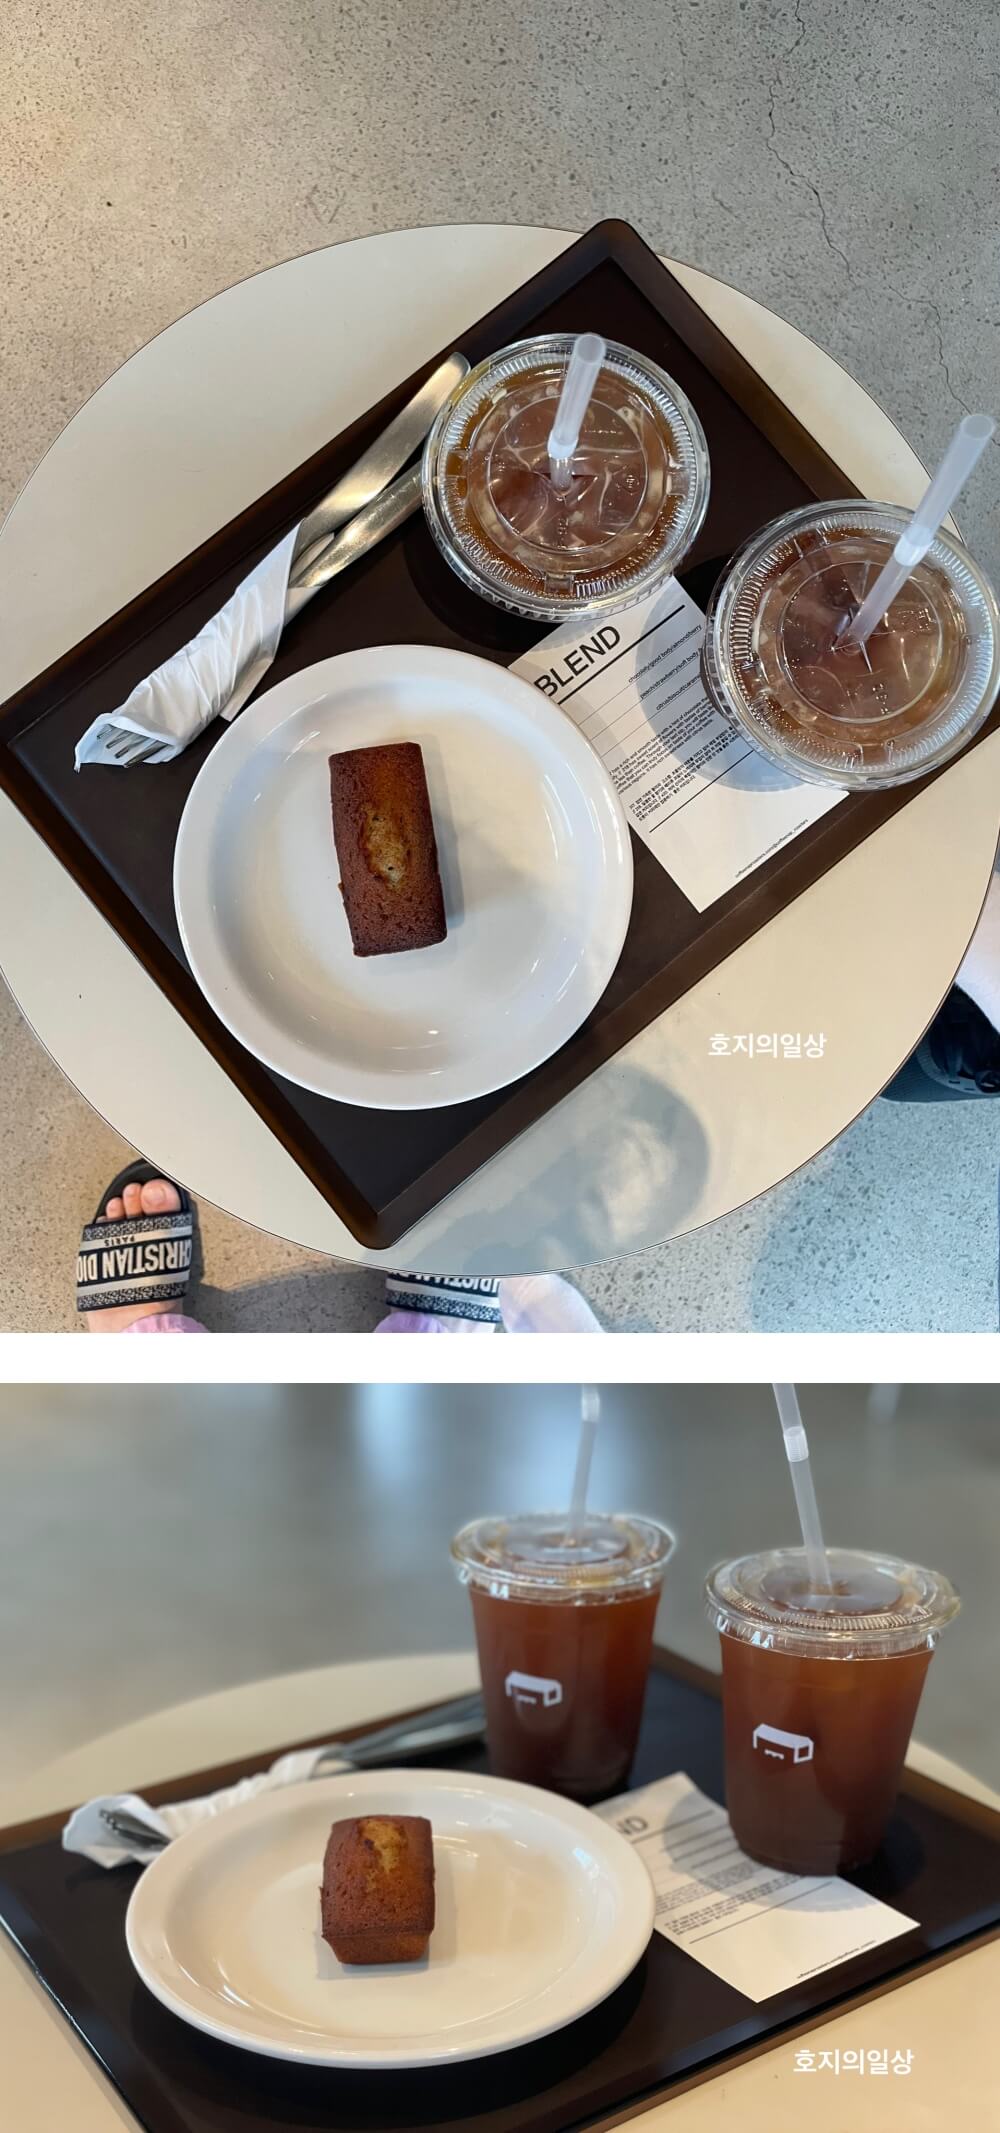 애월 카페 맛집 커피냅로스터스 제주 - 주문한 메뉴